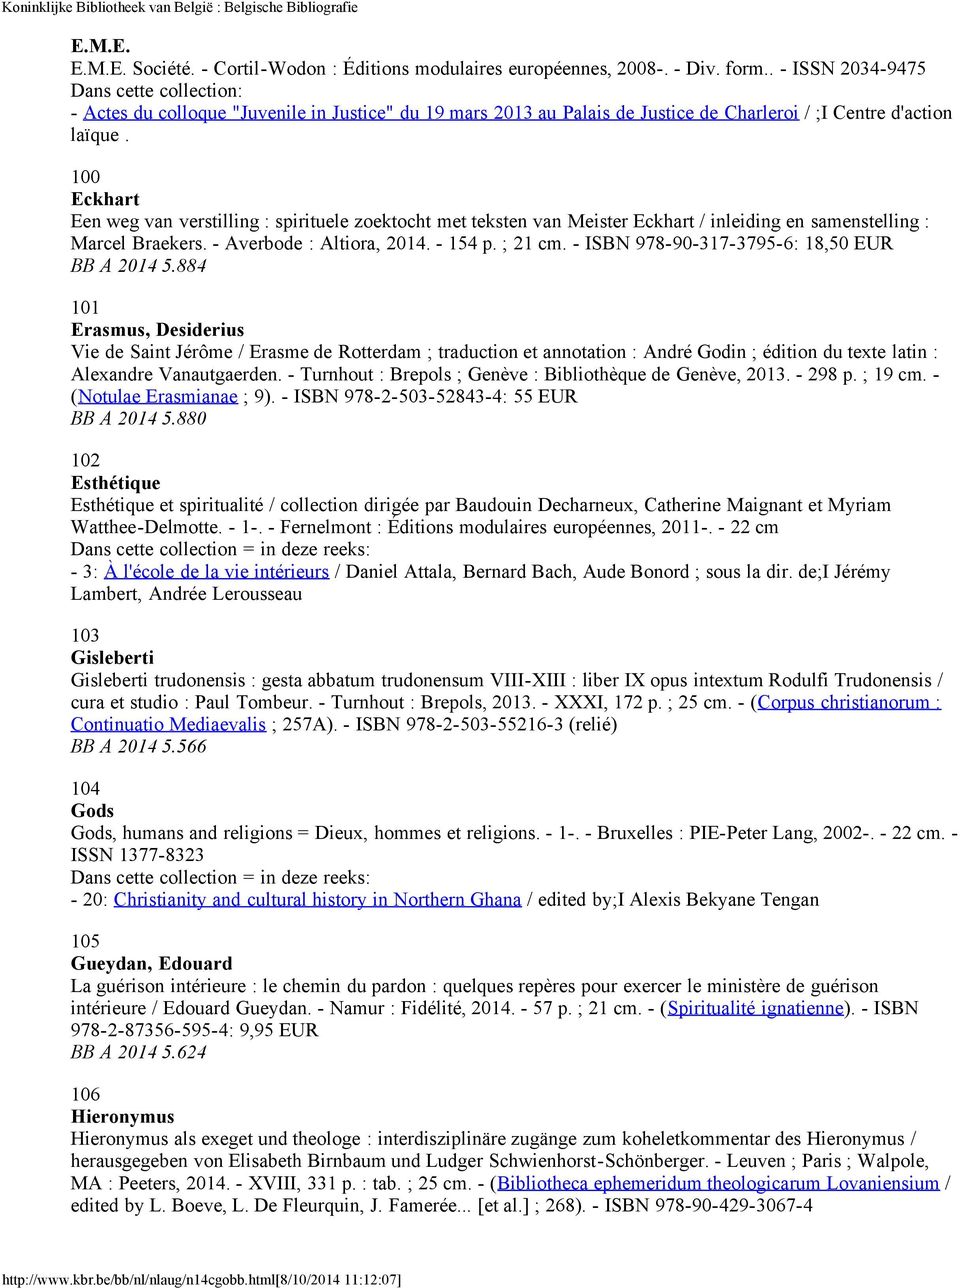 100 Eckhart Een weg van verstilling : spirituele zoektocht met teksten van Meister Eckhart / inleiding en samenstelling : Marcel Braekers. - Averbode : Altiora, 2014. - 154 p. ; 21 cm.